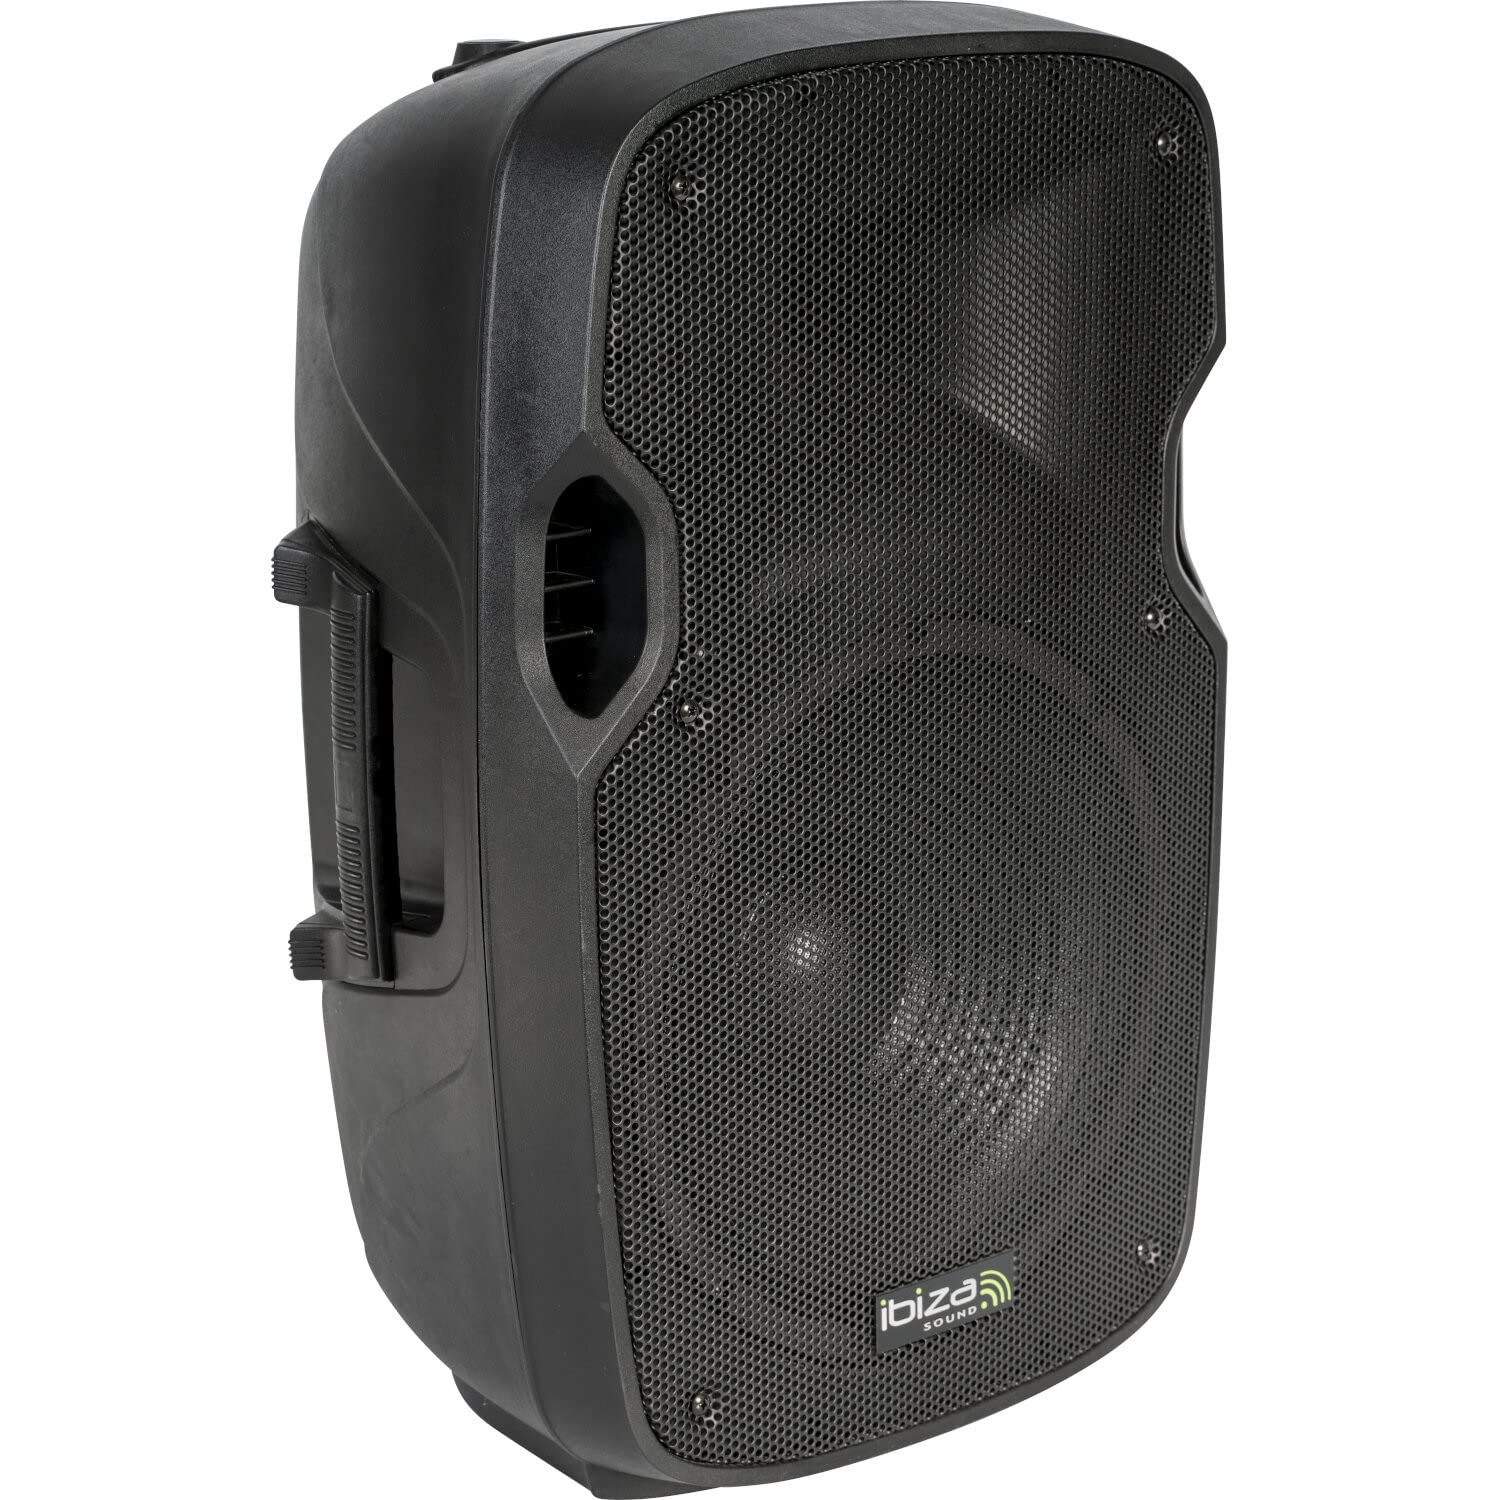 Ibiza - XTK12A - 12"/30cm aktives Plug & Play Lautsprechersystem mit 500W RMS Belastbarkeit - Kompressionshochtöner, Bassreflexsystem, Verstärkermodul, LINE/Micro Eingänge - Schwarz